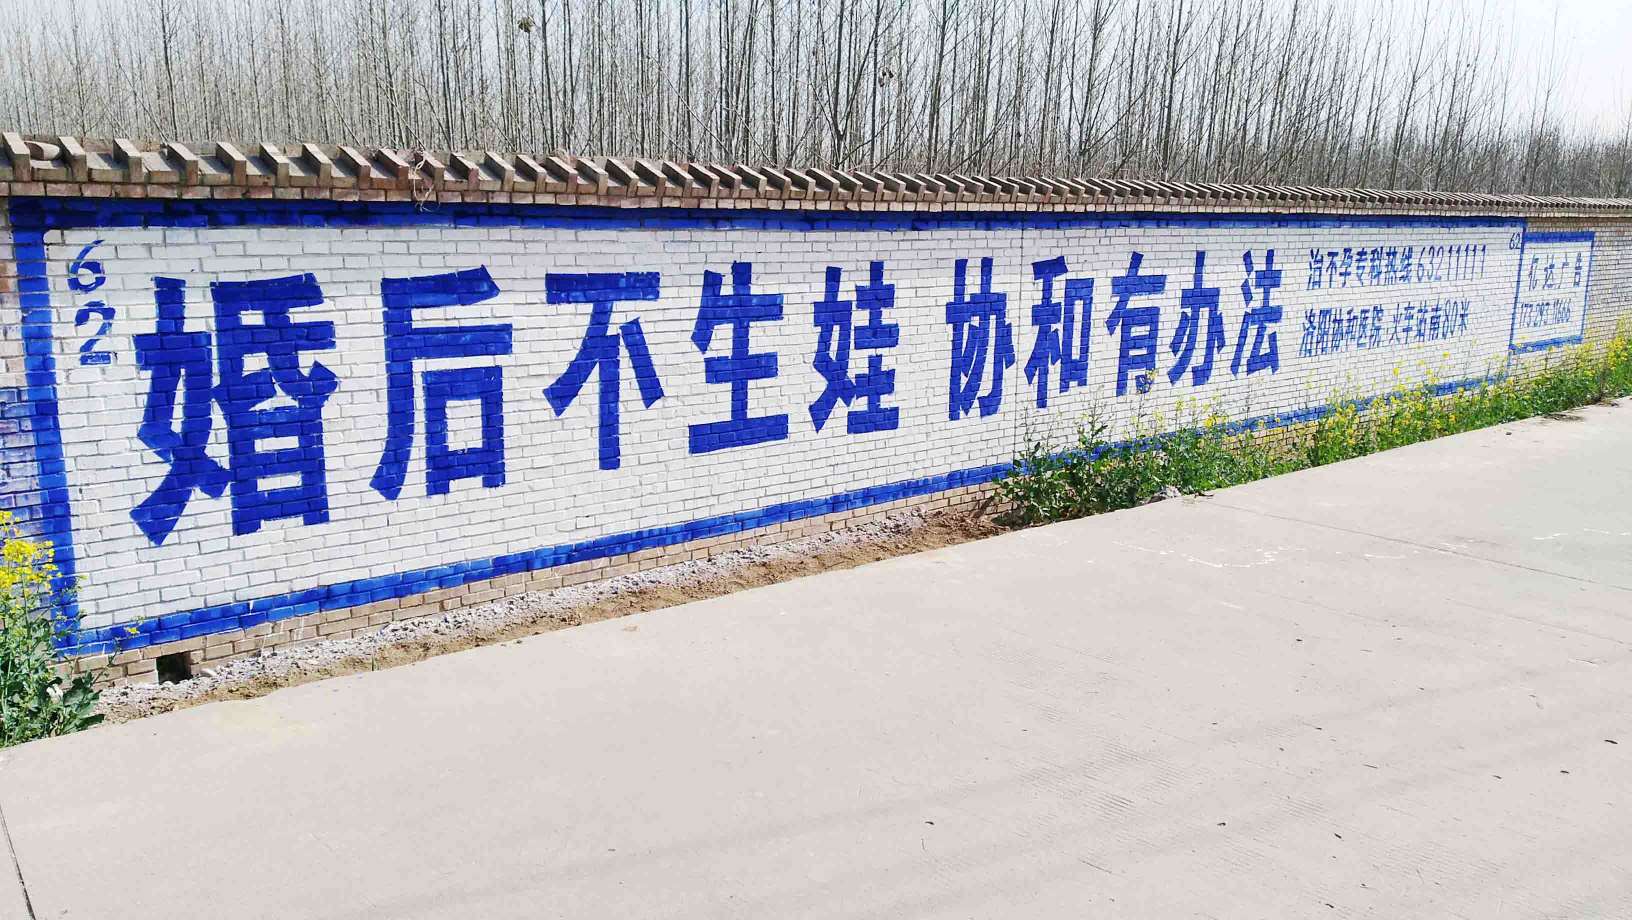 安庆墙体广告阜阳户外广告池州长安刷墙广告